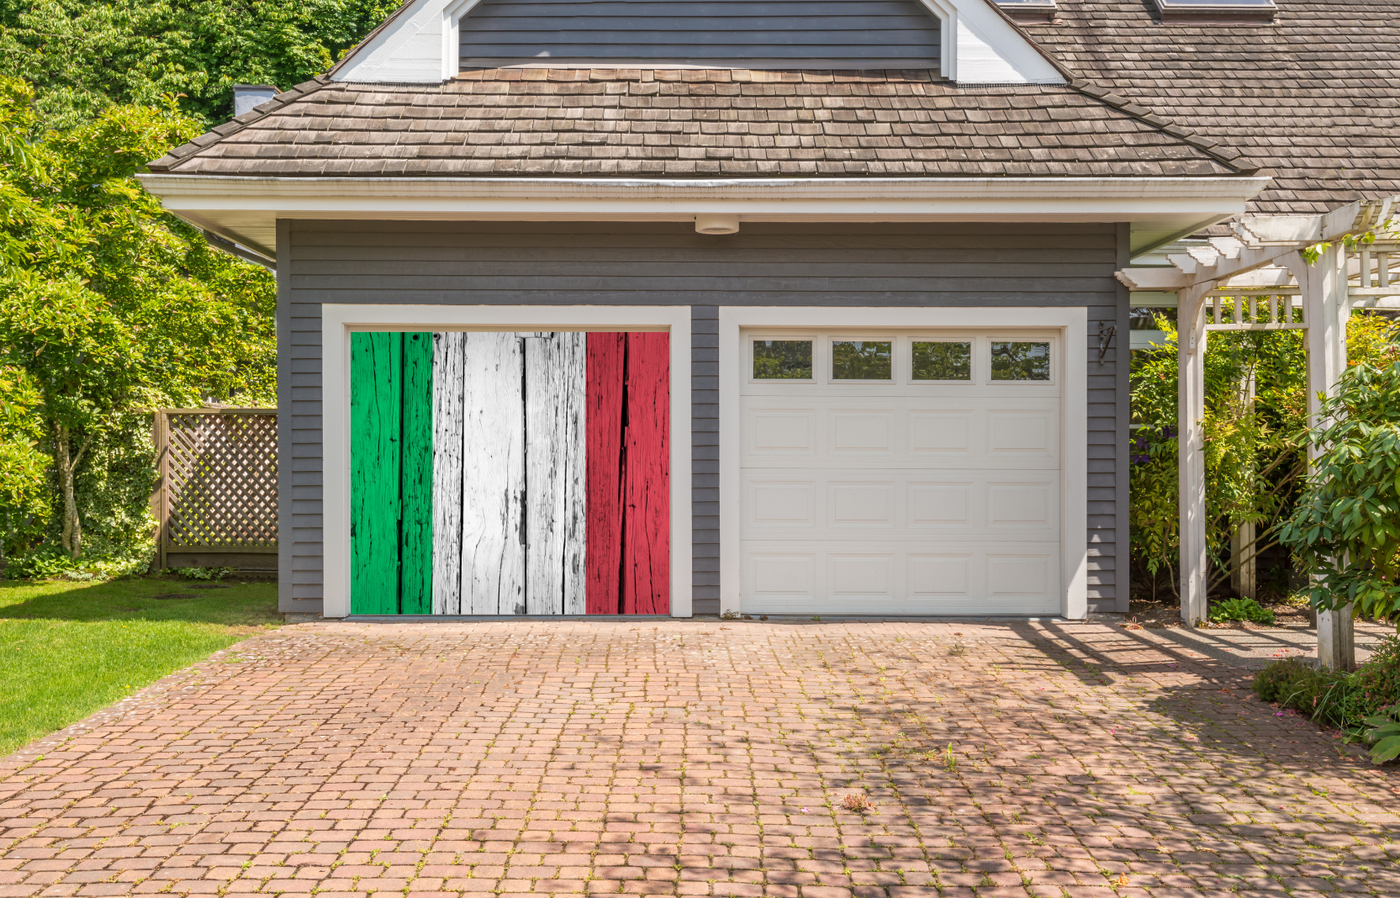 Italy Flag On Wooden Garage Door Cover